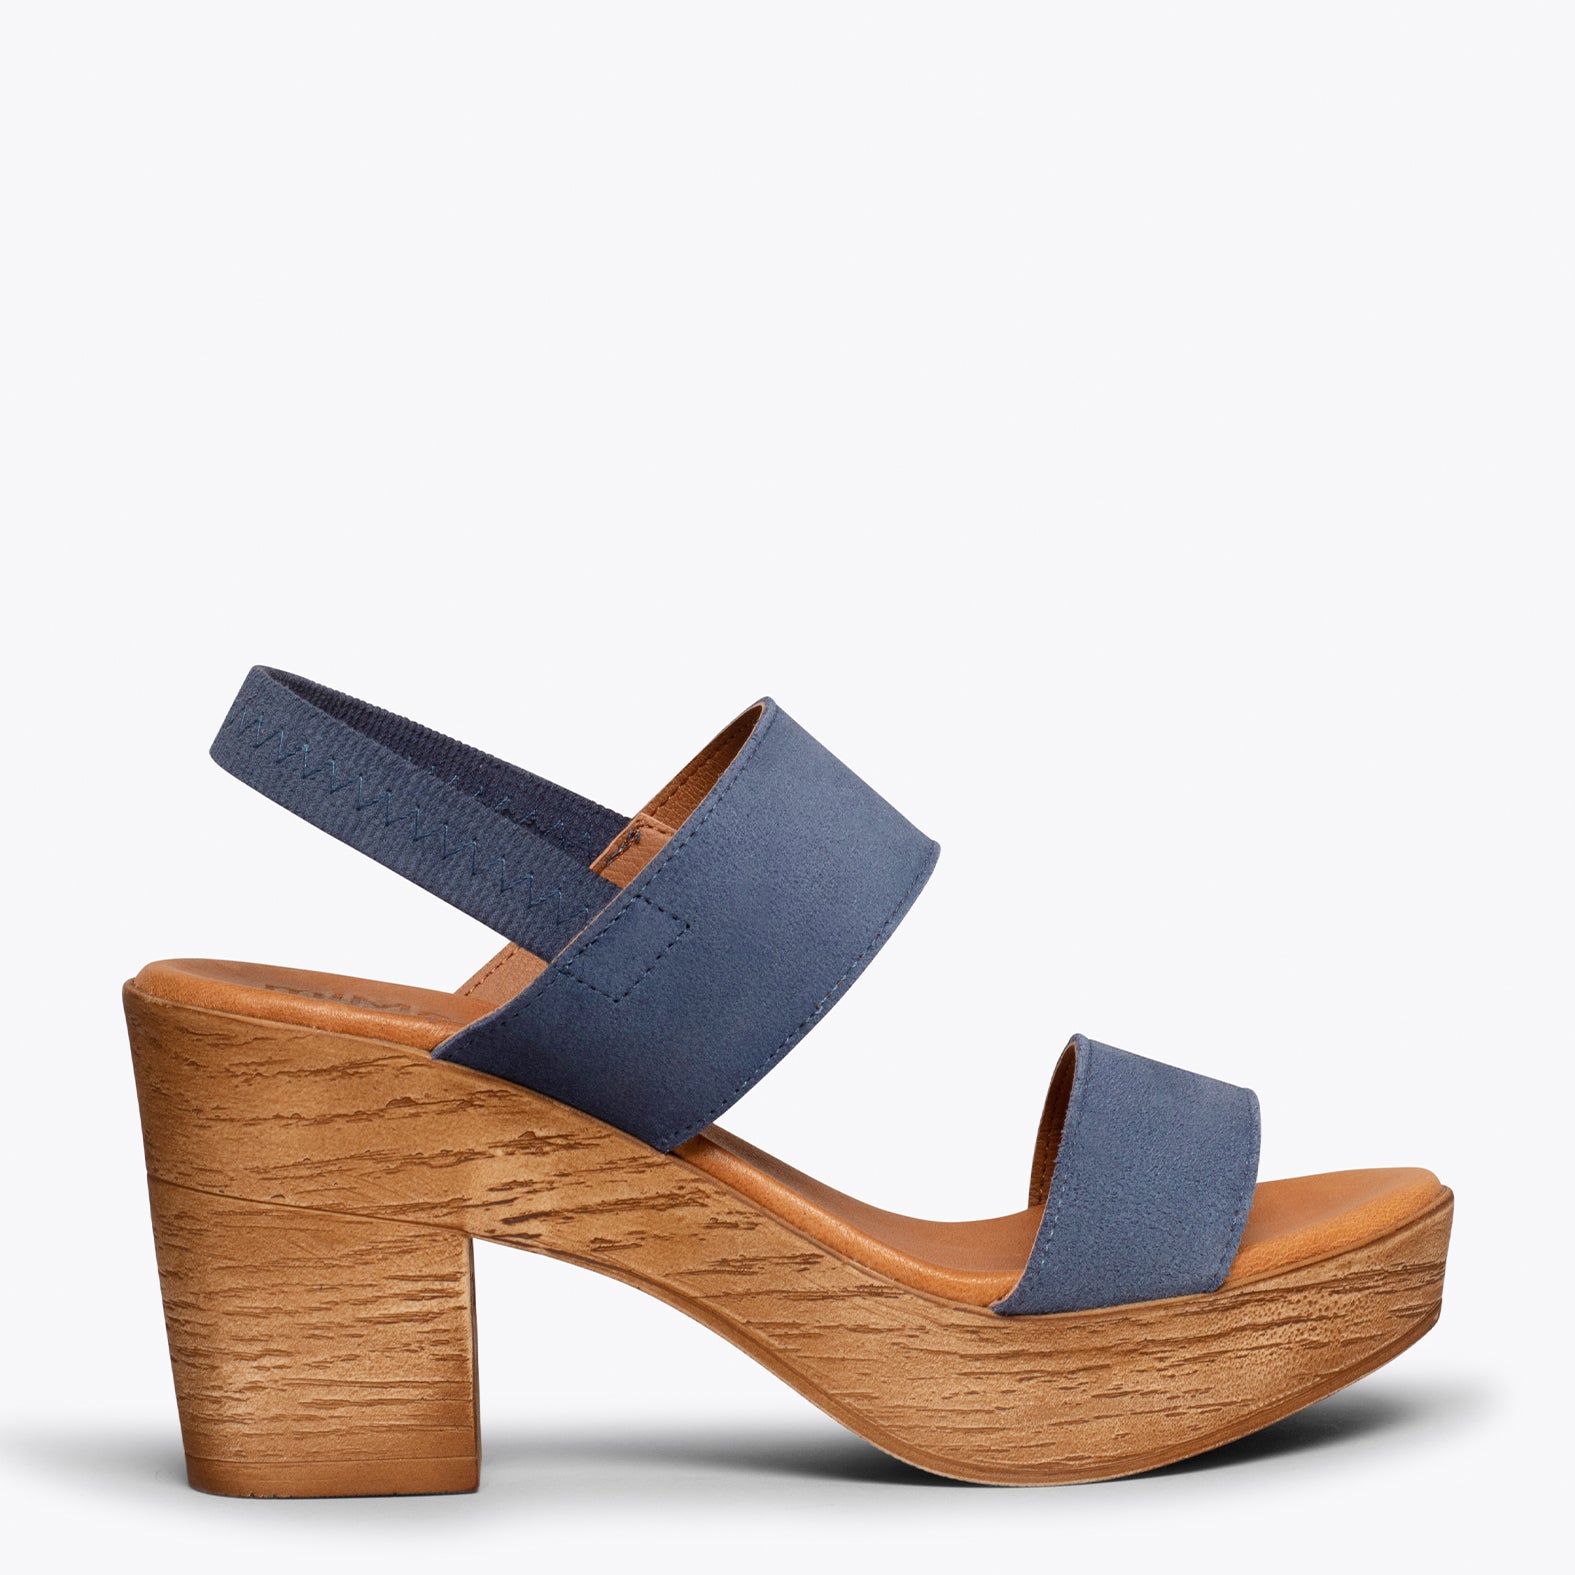 PLATFORM – BLUE platform sandals with straps